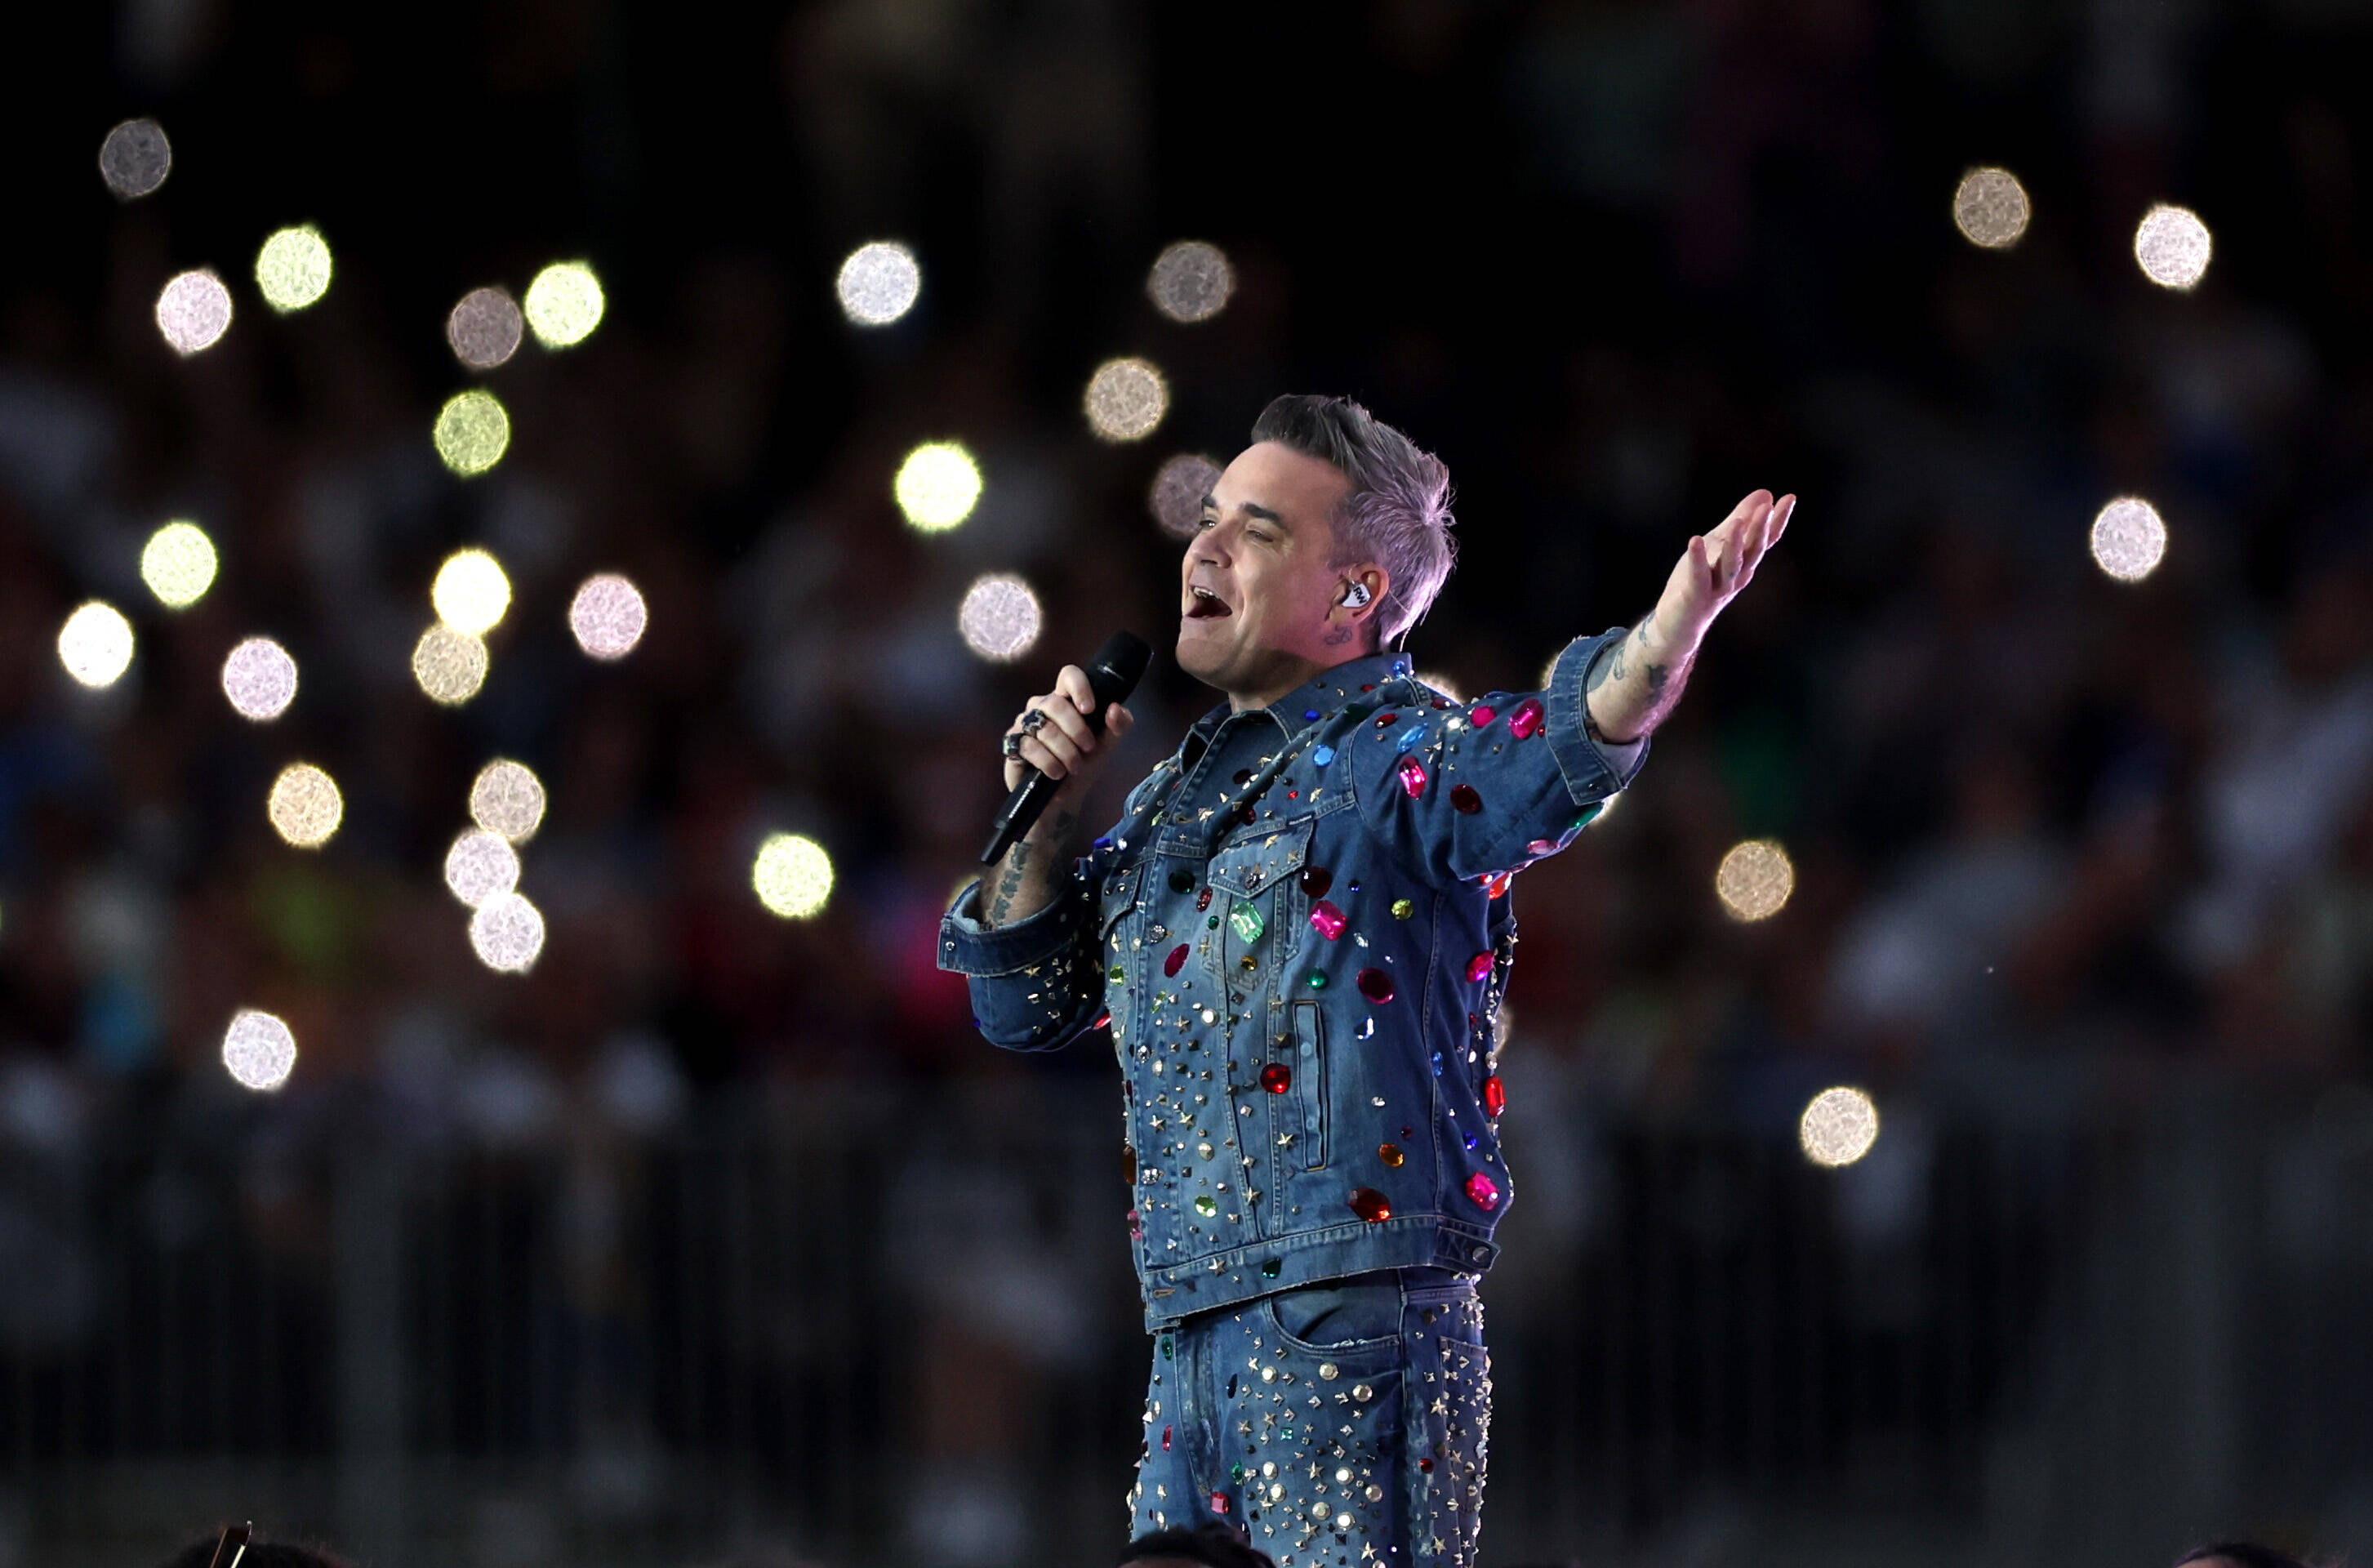 "Les pilules me dépriment" : Robbie Williams décide d'assumer sa calvitie